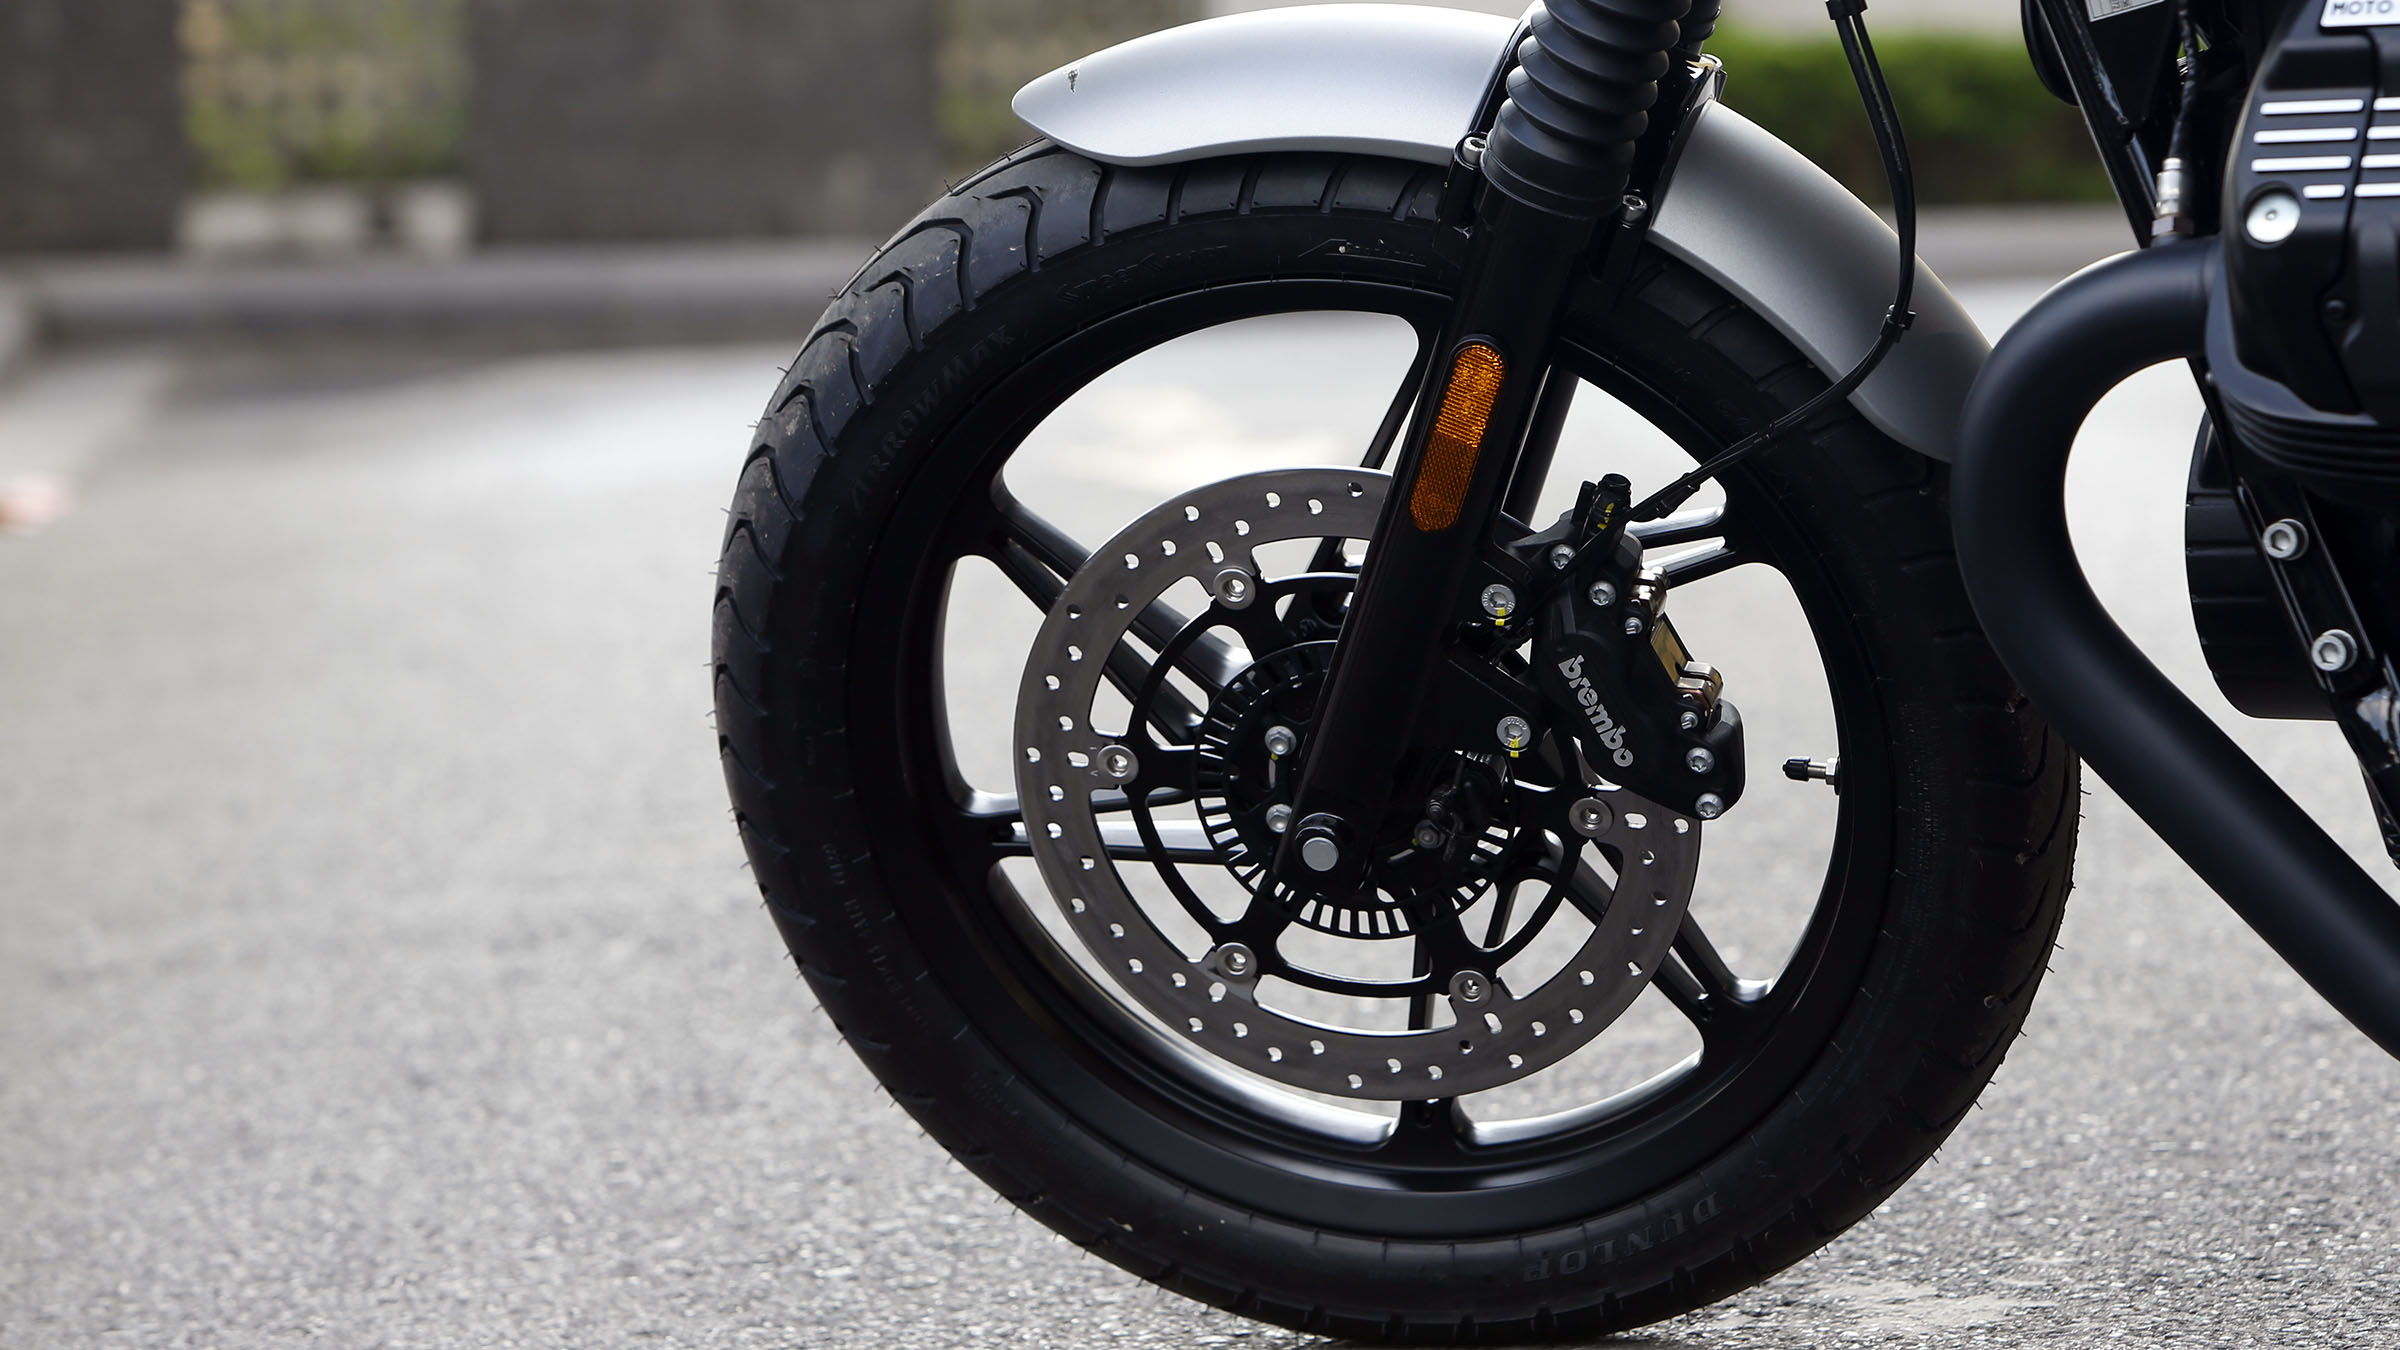 Thế giới 2 bánh: Moto Guzzi V7 khởi điểm từ 385 triệu đồng - Ảnh 9.